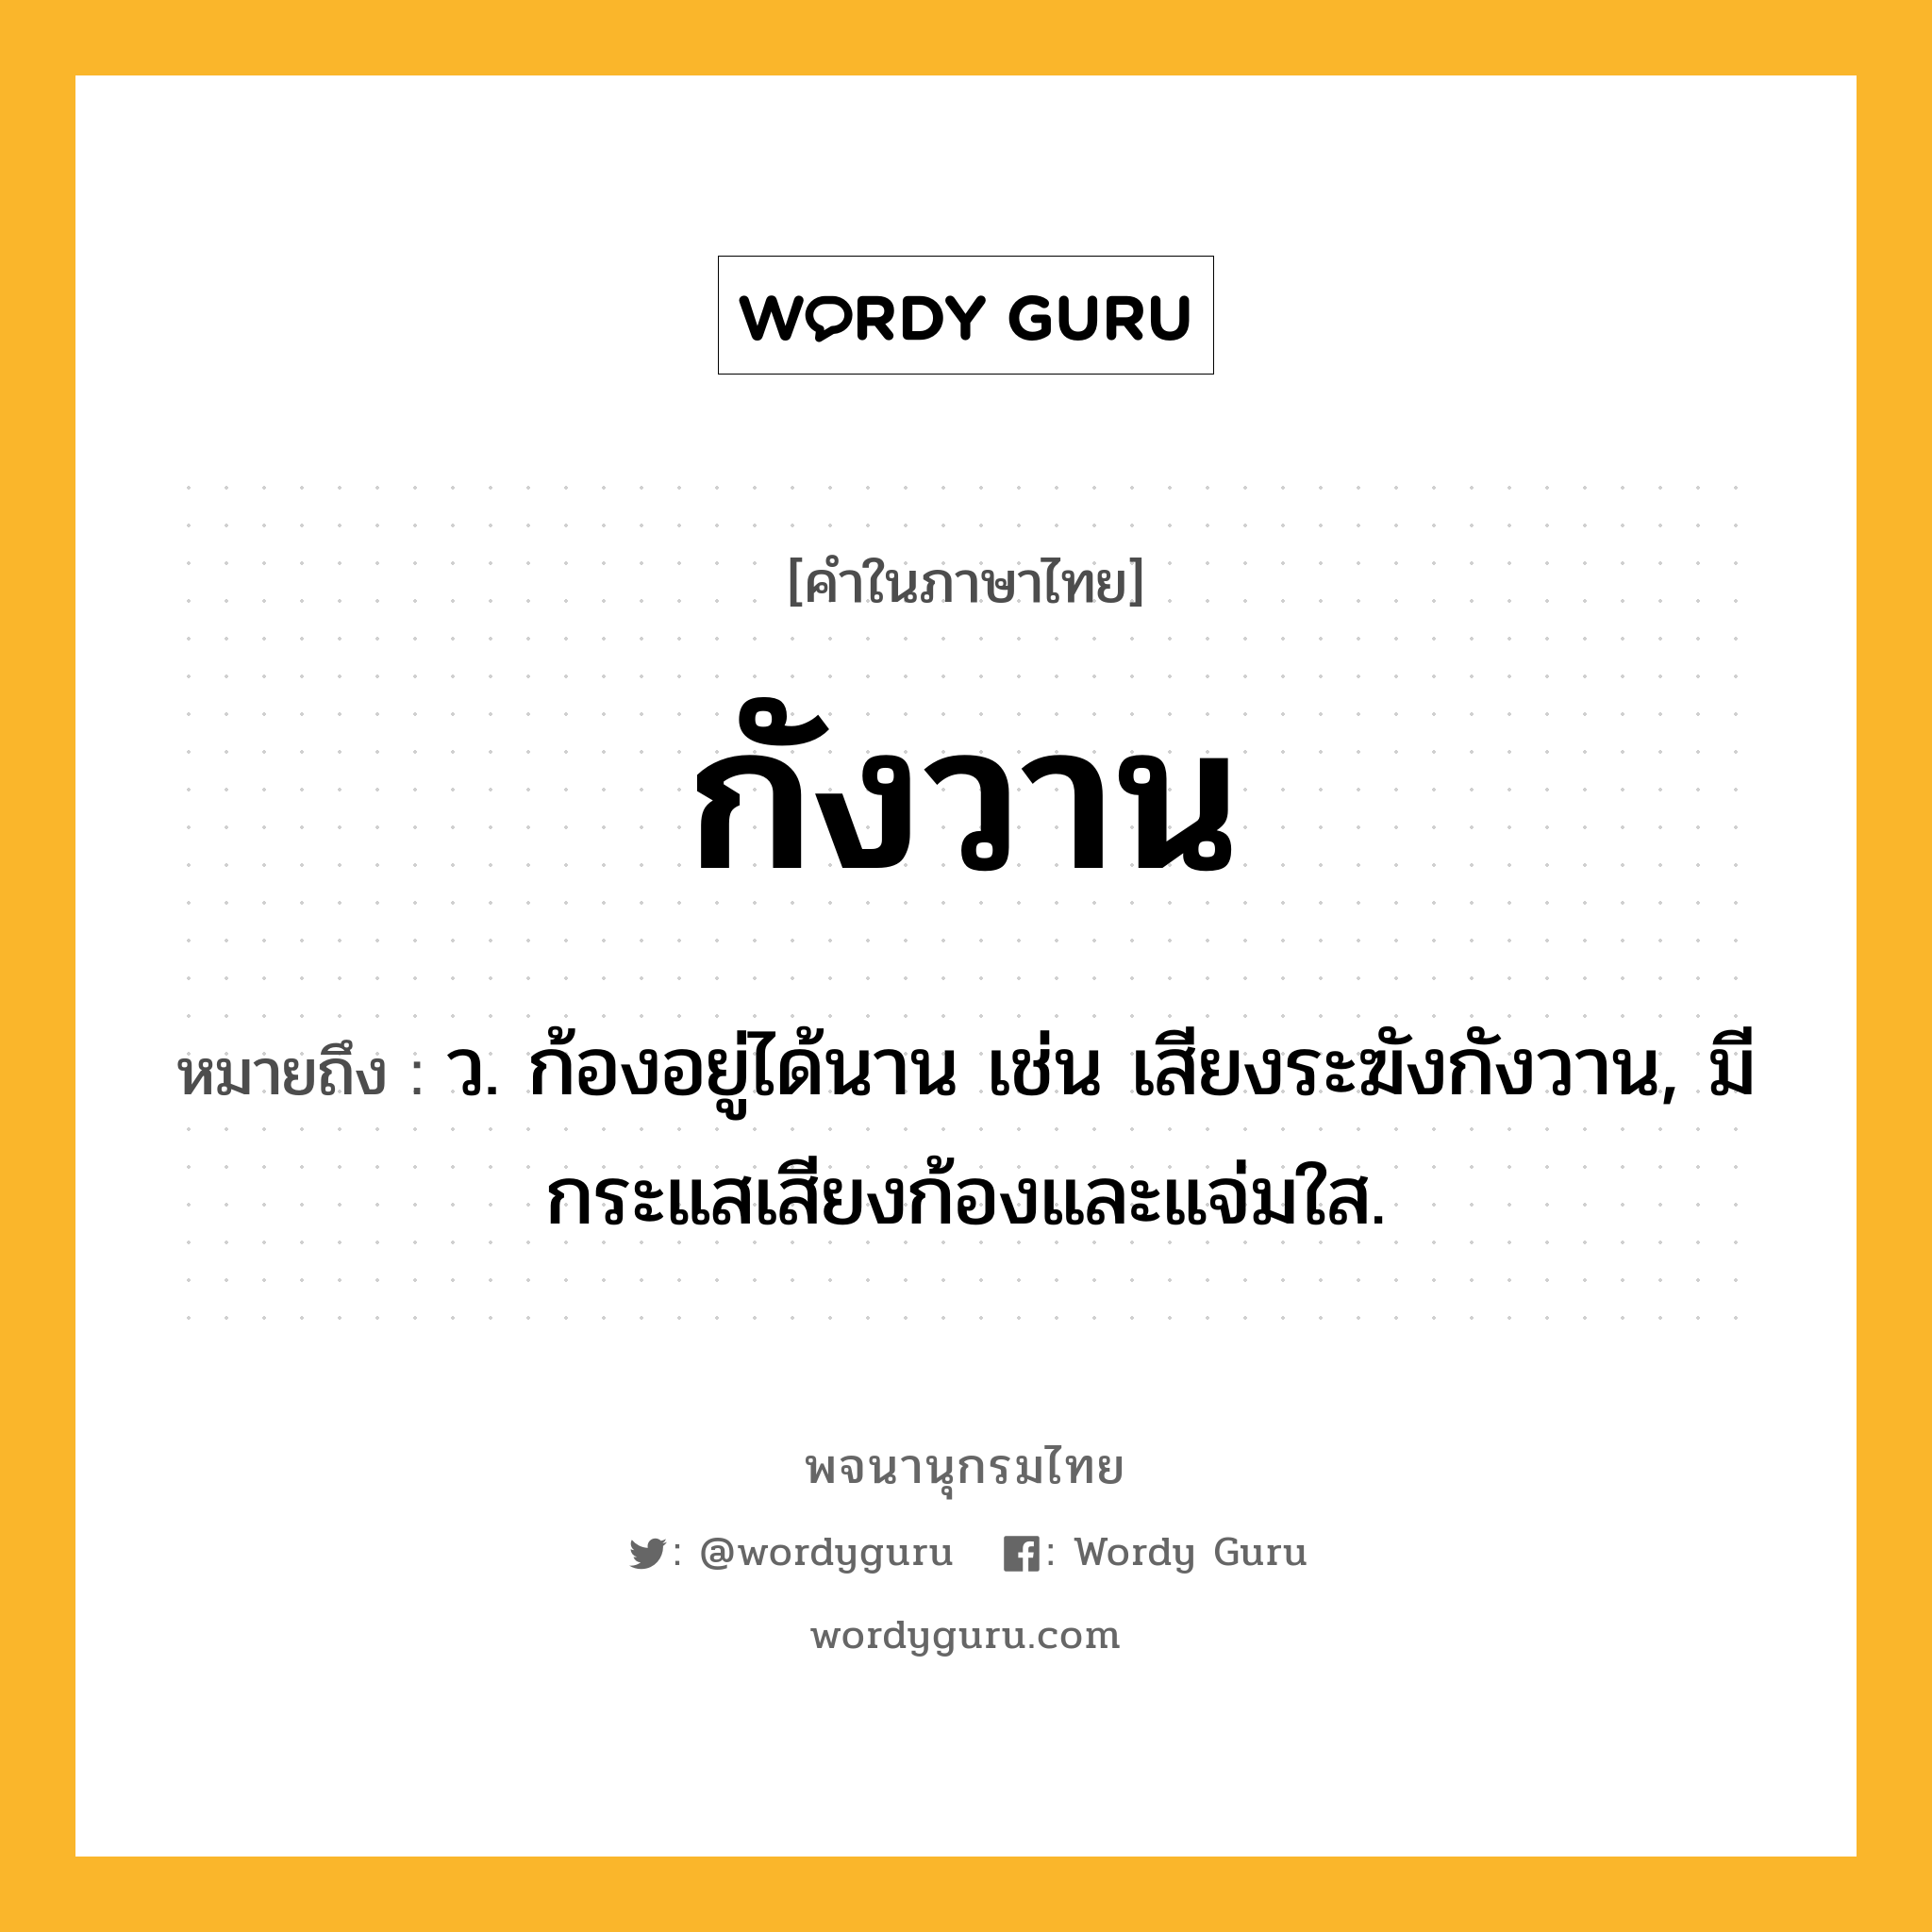 กังวาน หมายถึงอะไร?, คำในภาษาไทย กังวาน หมายถึง ว. ก้องอยู่ได้นาน เช่น เสียงระฆังกังวาน, มีกระแสเสียงก้องและแจ่มใส.